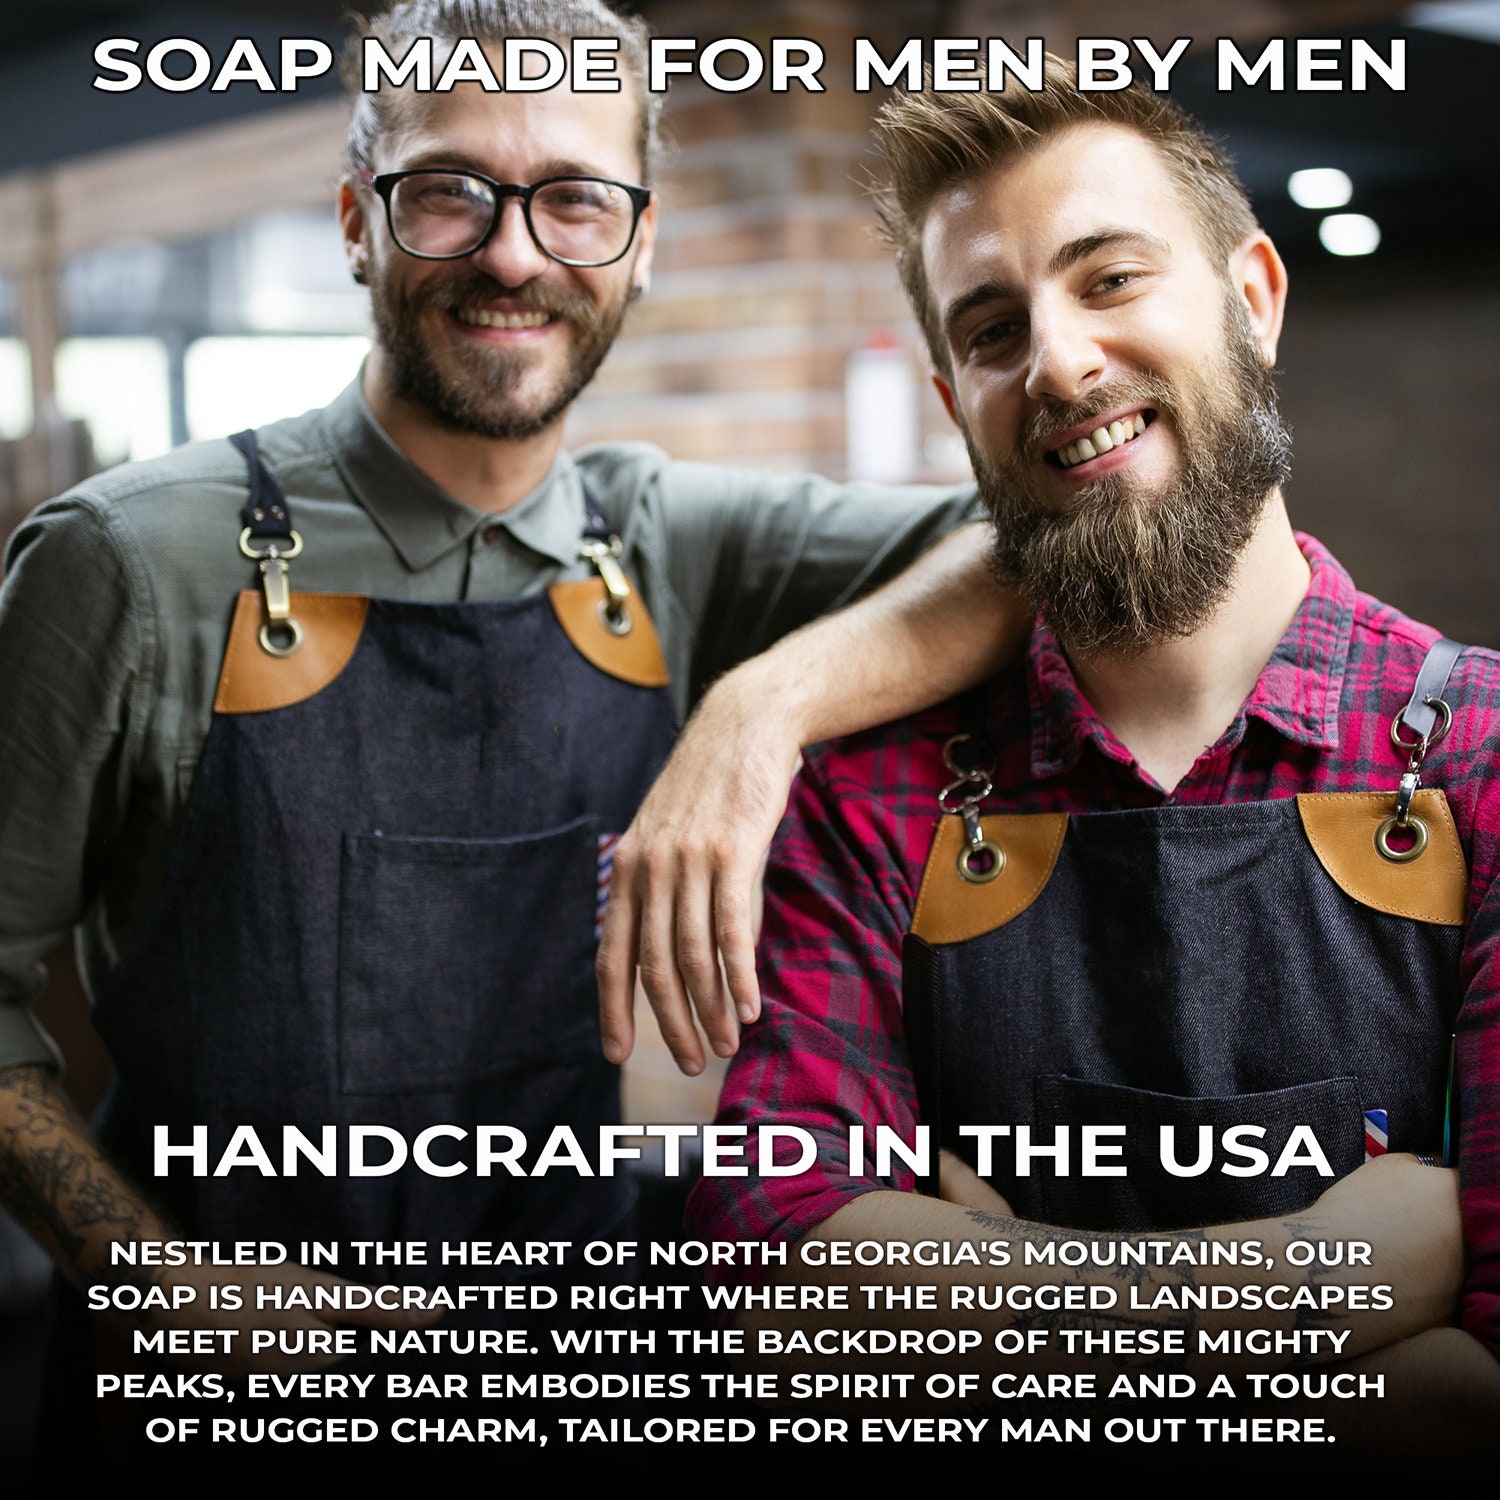 TRUE GRIT Soap, Soap for Men, Cowboy Soap, Dude Soap